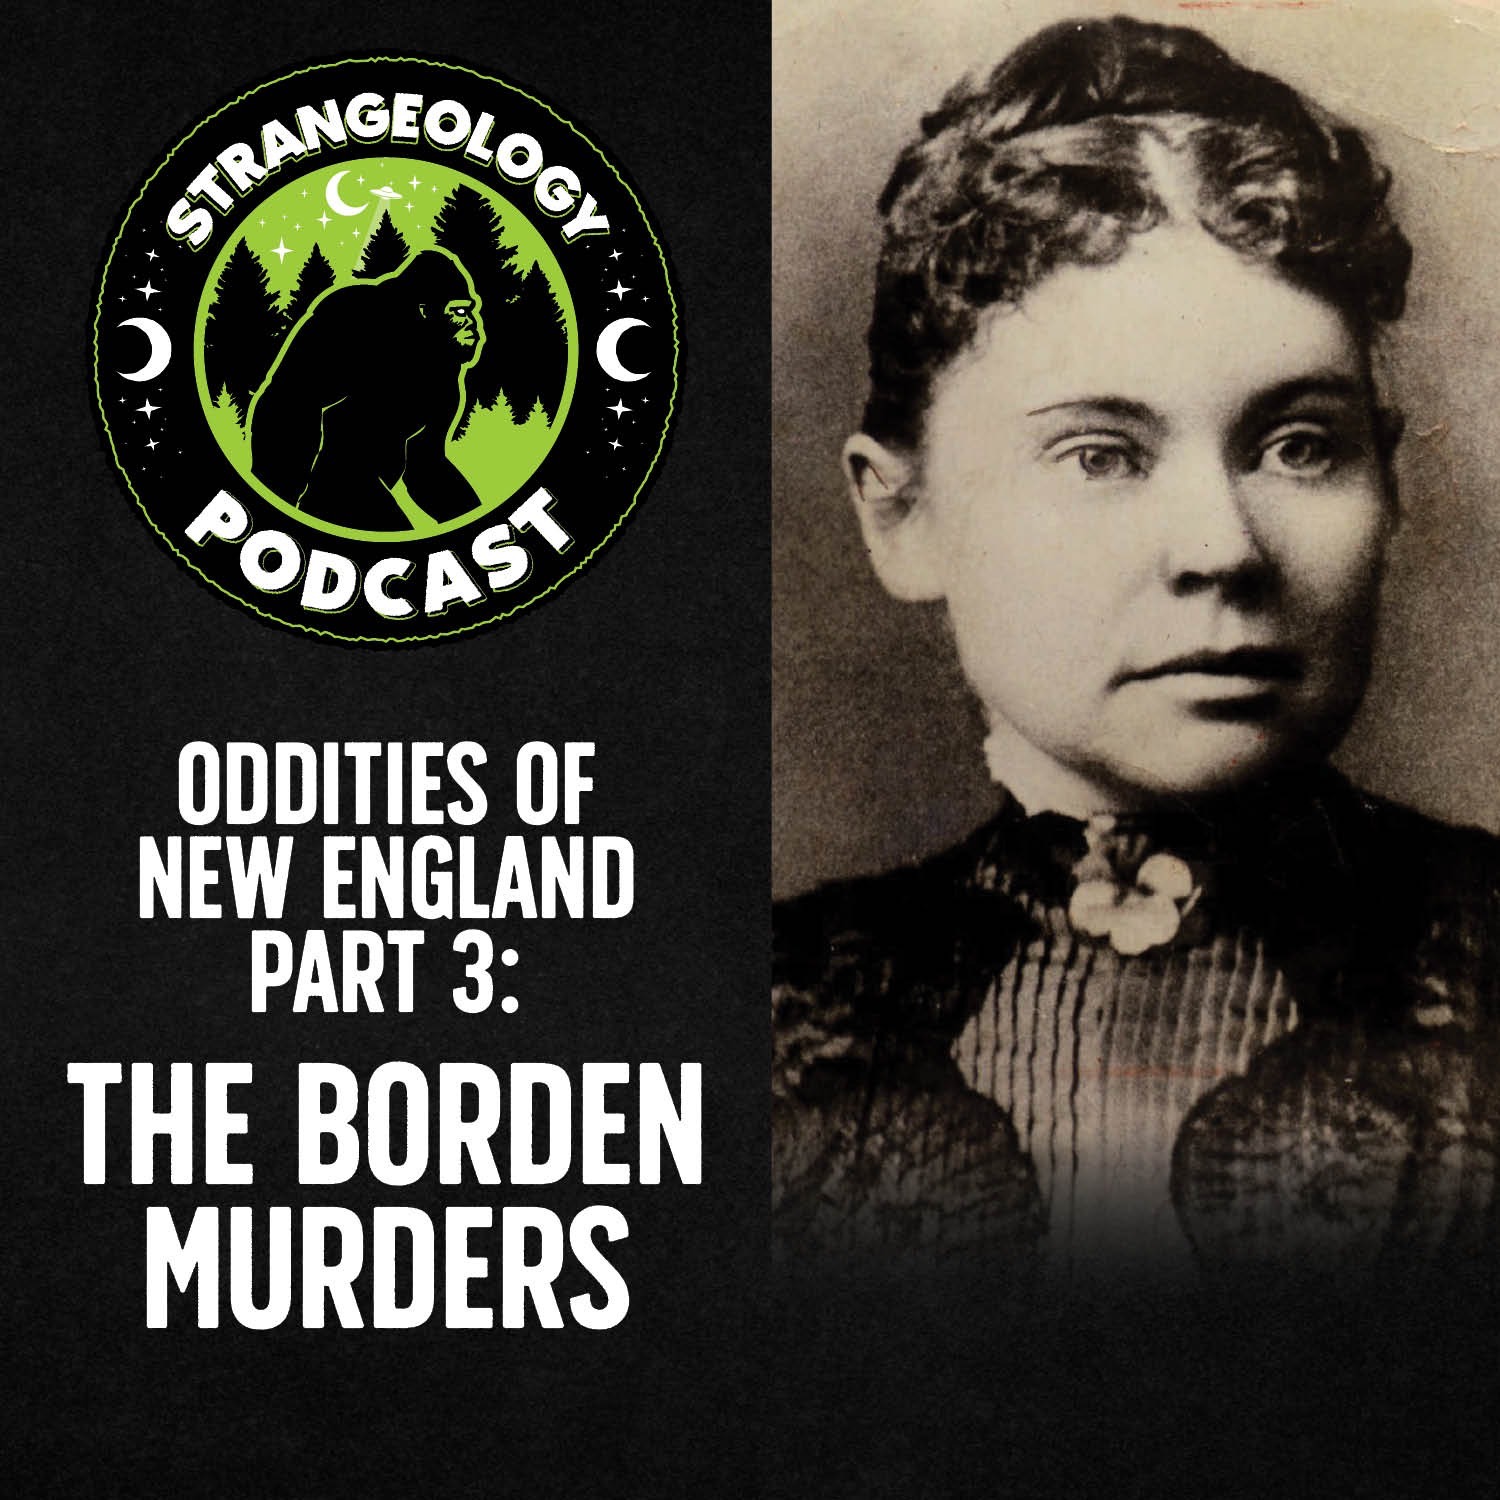 Oddities of New England Part 3: The Borden Murders